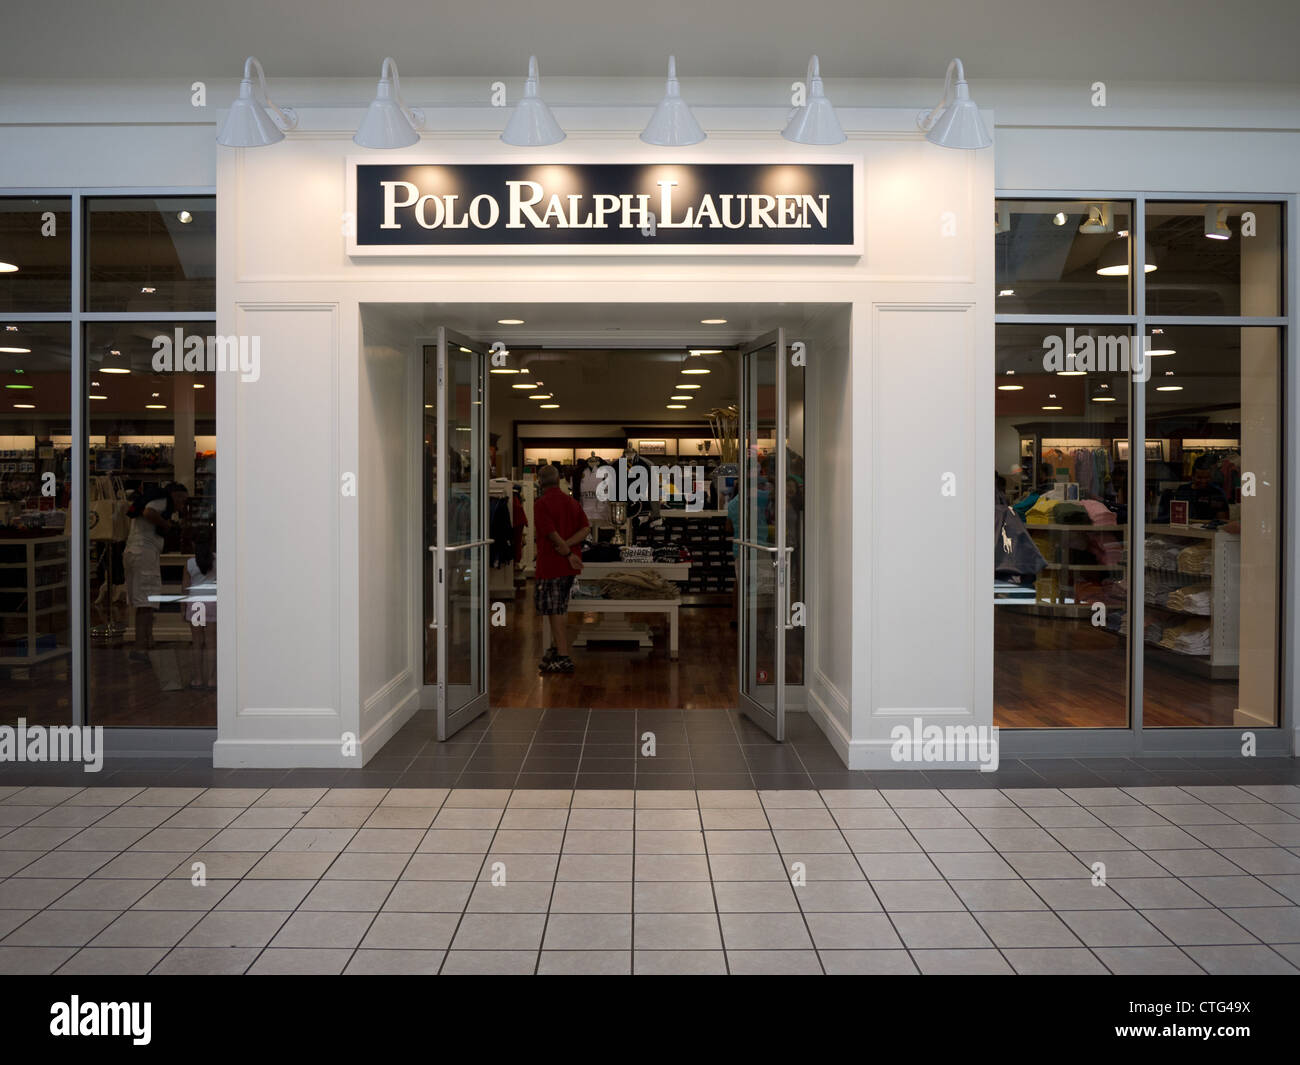 Polo Ralph Lauren à l'intérieur de l'entrée du magasin mall Photo Stock -  Alamy